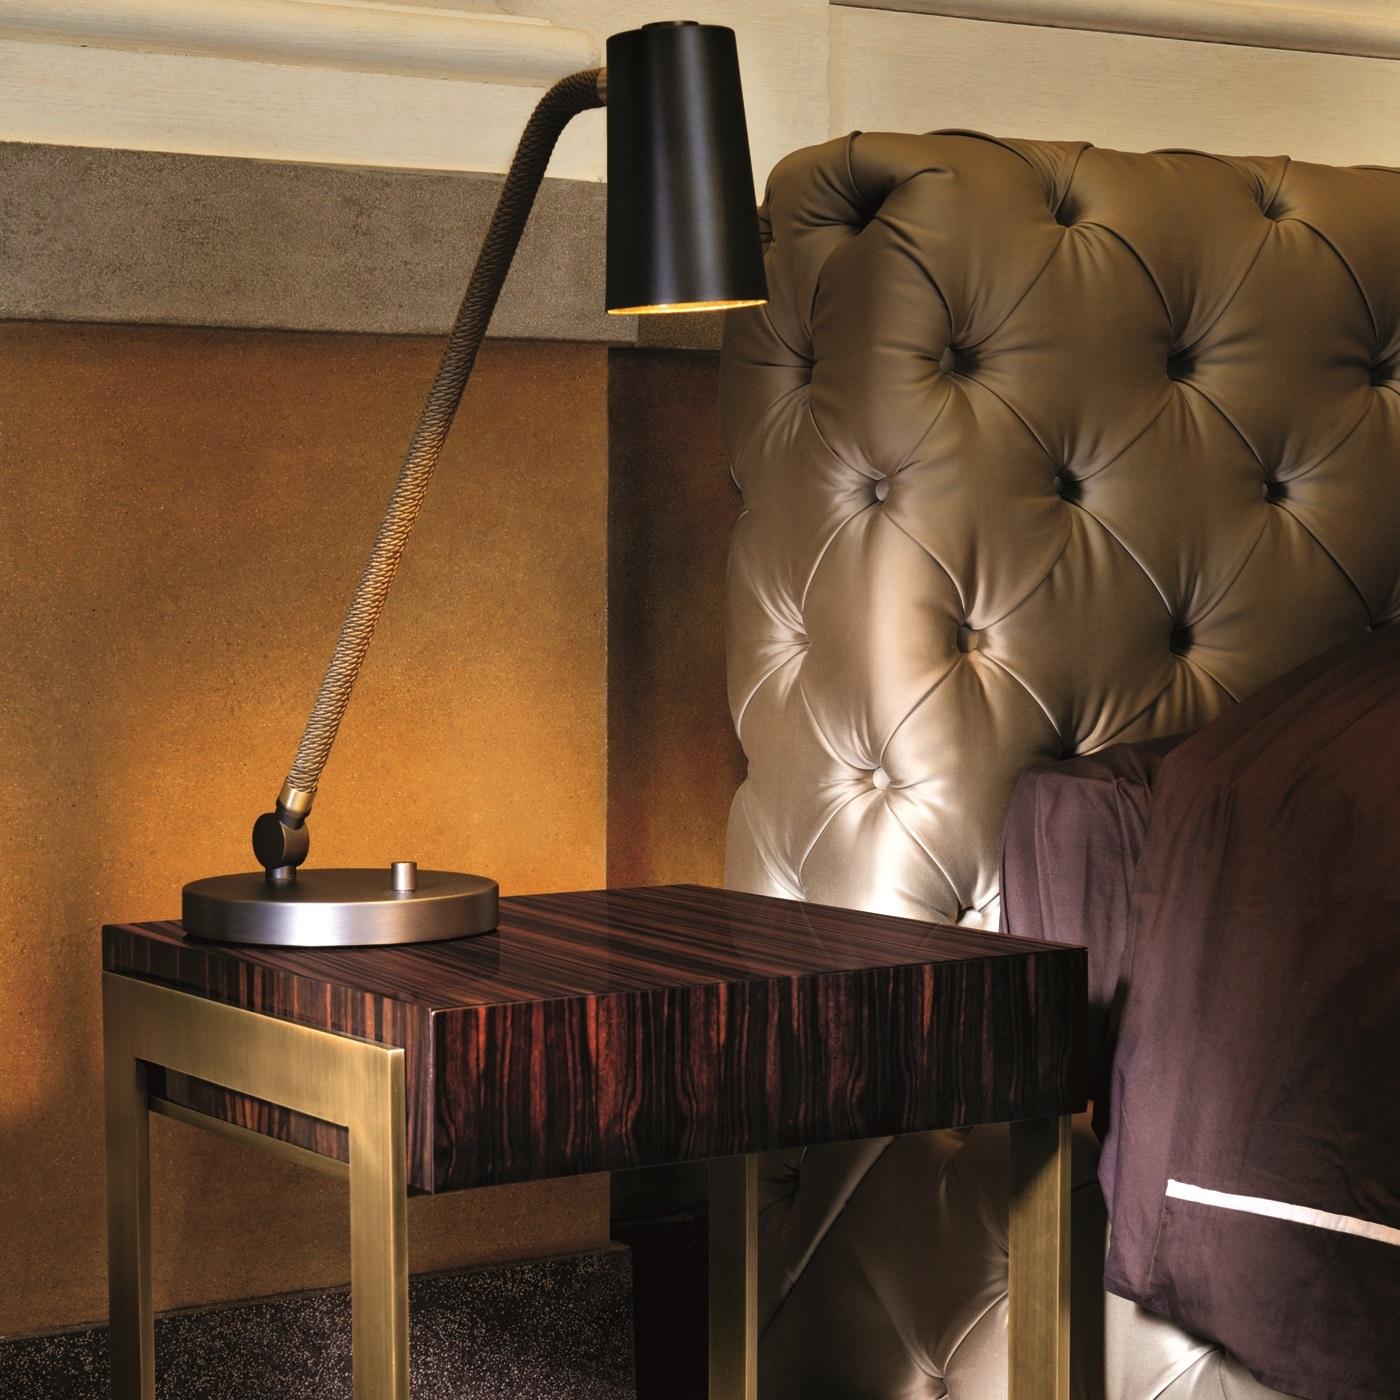 Cette table de chevet luxueuse présente une combinaison audacieuse de couleurs, de textures et de motifs contrastés dans un cadre linéaire et minimaliste, révélant un design intriguant qui insufflera de la sophistication dans une chambre à coucher